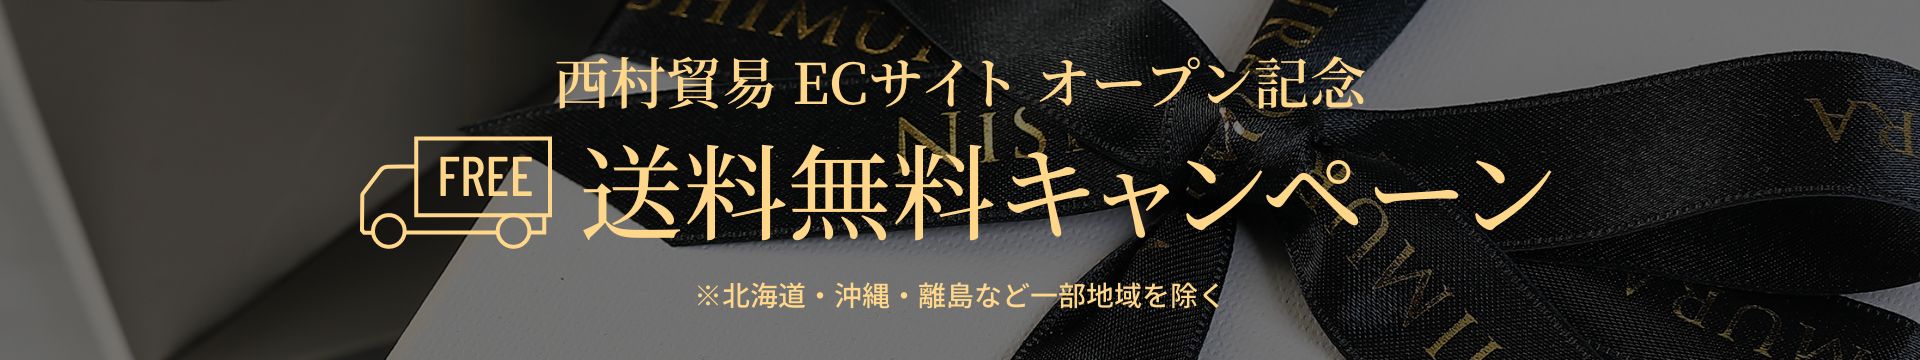 西村貿易 ECサイト オープン記念・送料無料キャンペーン